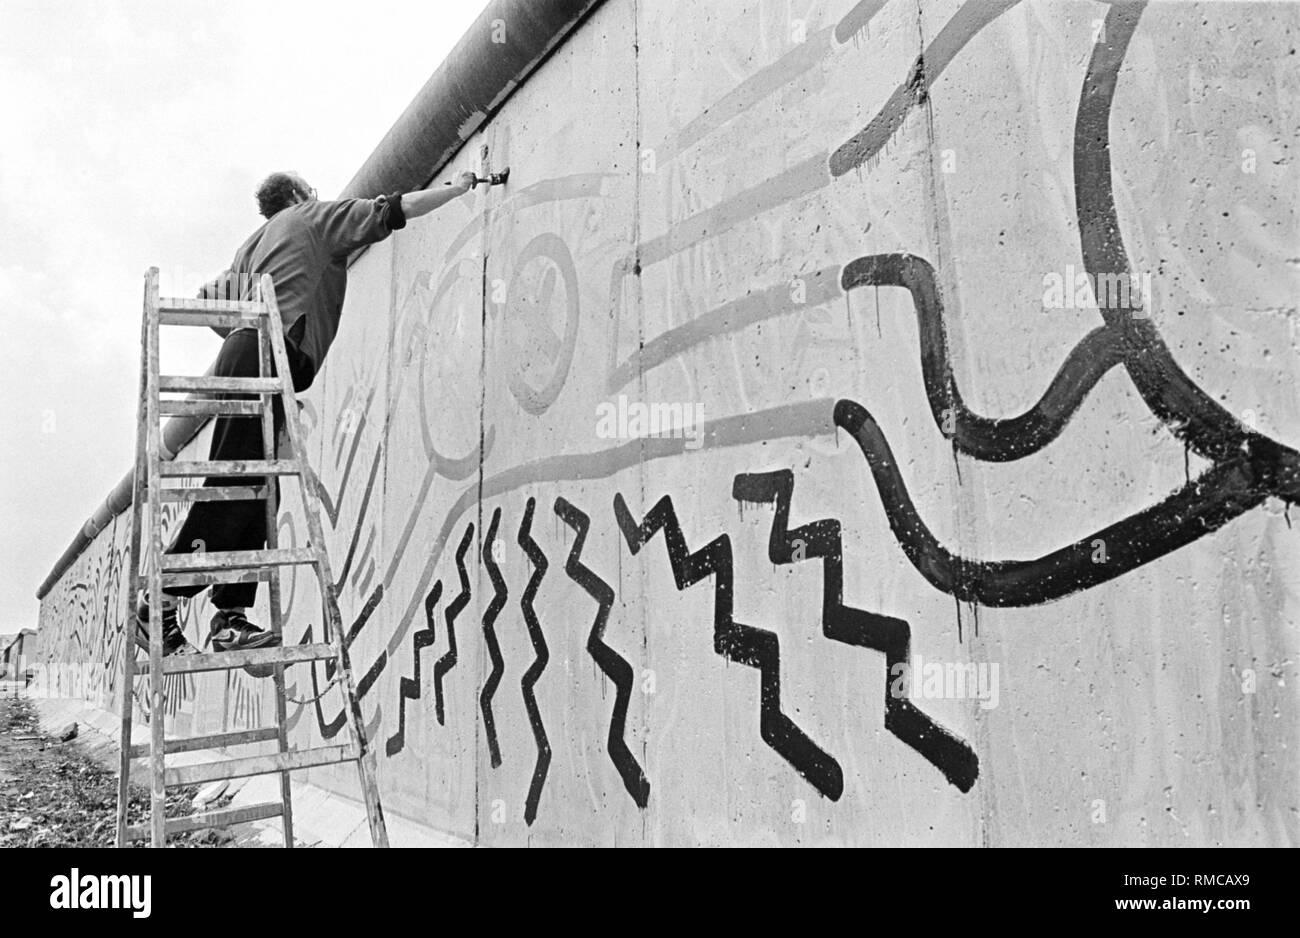 L'artiste américain Keith Haring peint à 100 mètres du mur de Berlin, près de la frontière, Ckeckpoint Charlie dans le quartier de Kreuzberg Banque D'Images